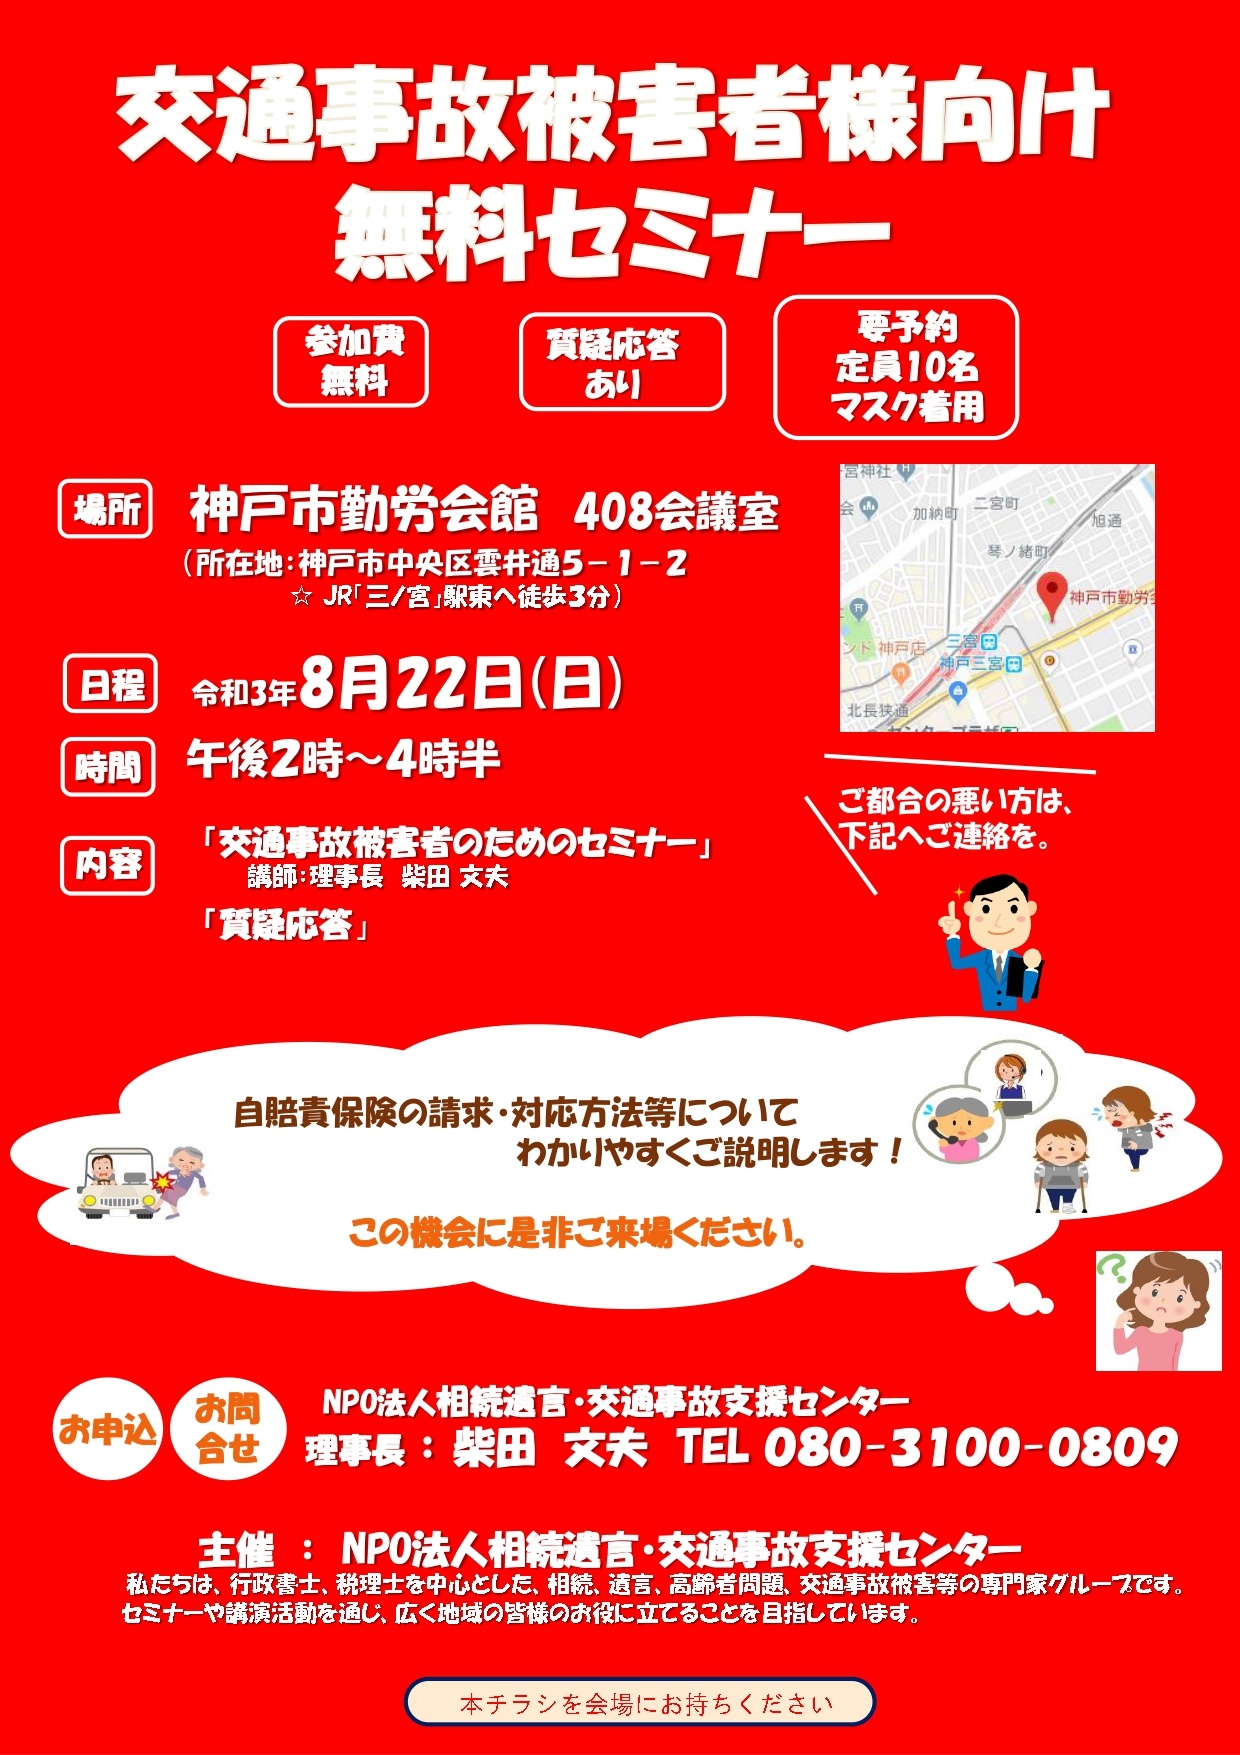 セミナー 神戸 神戸、姫路のマネーセミナーはリスクマネージメント神戸へ